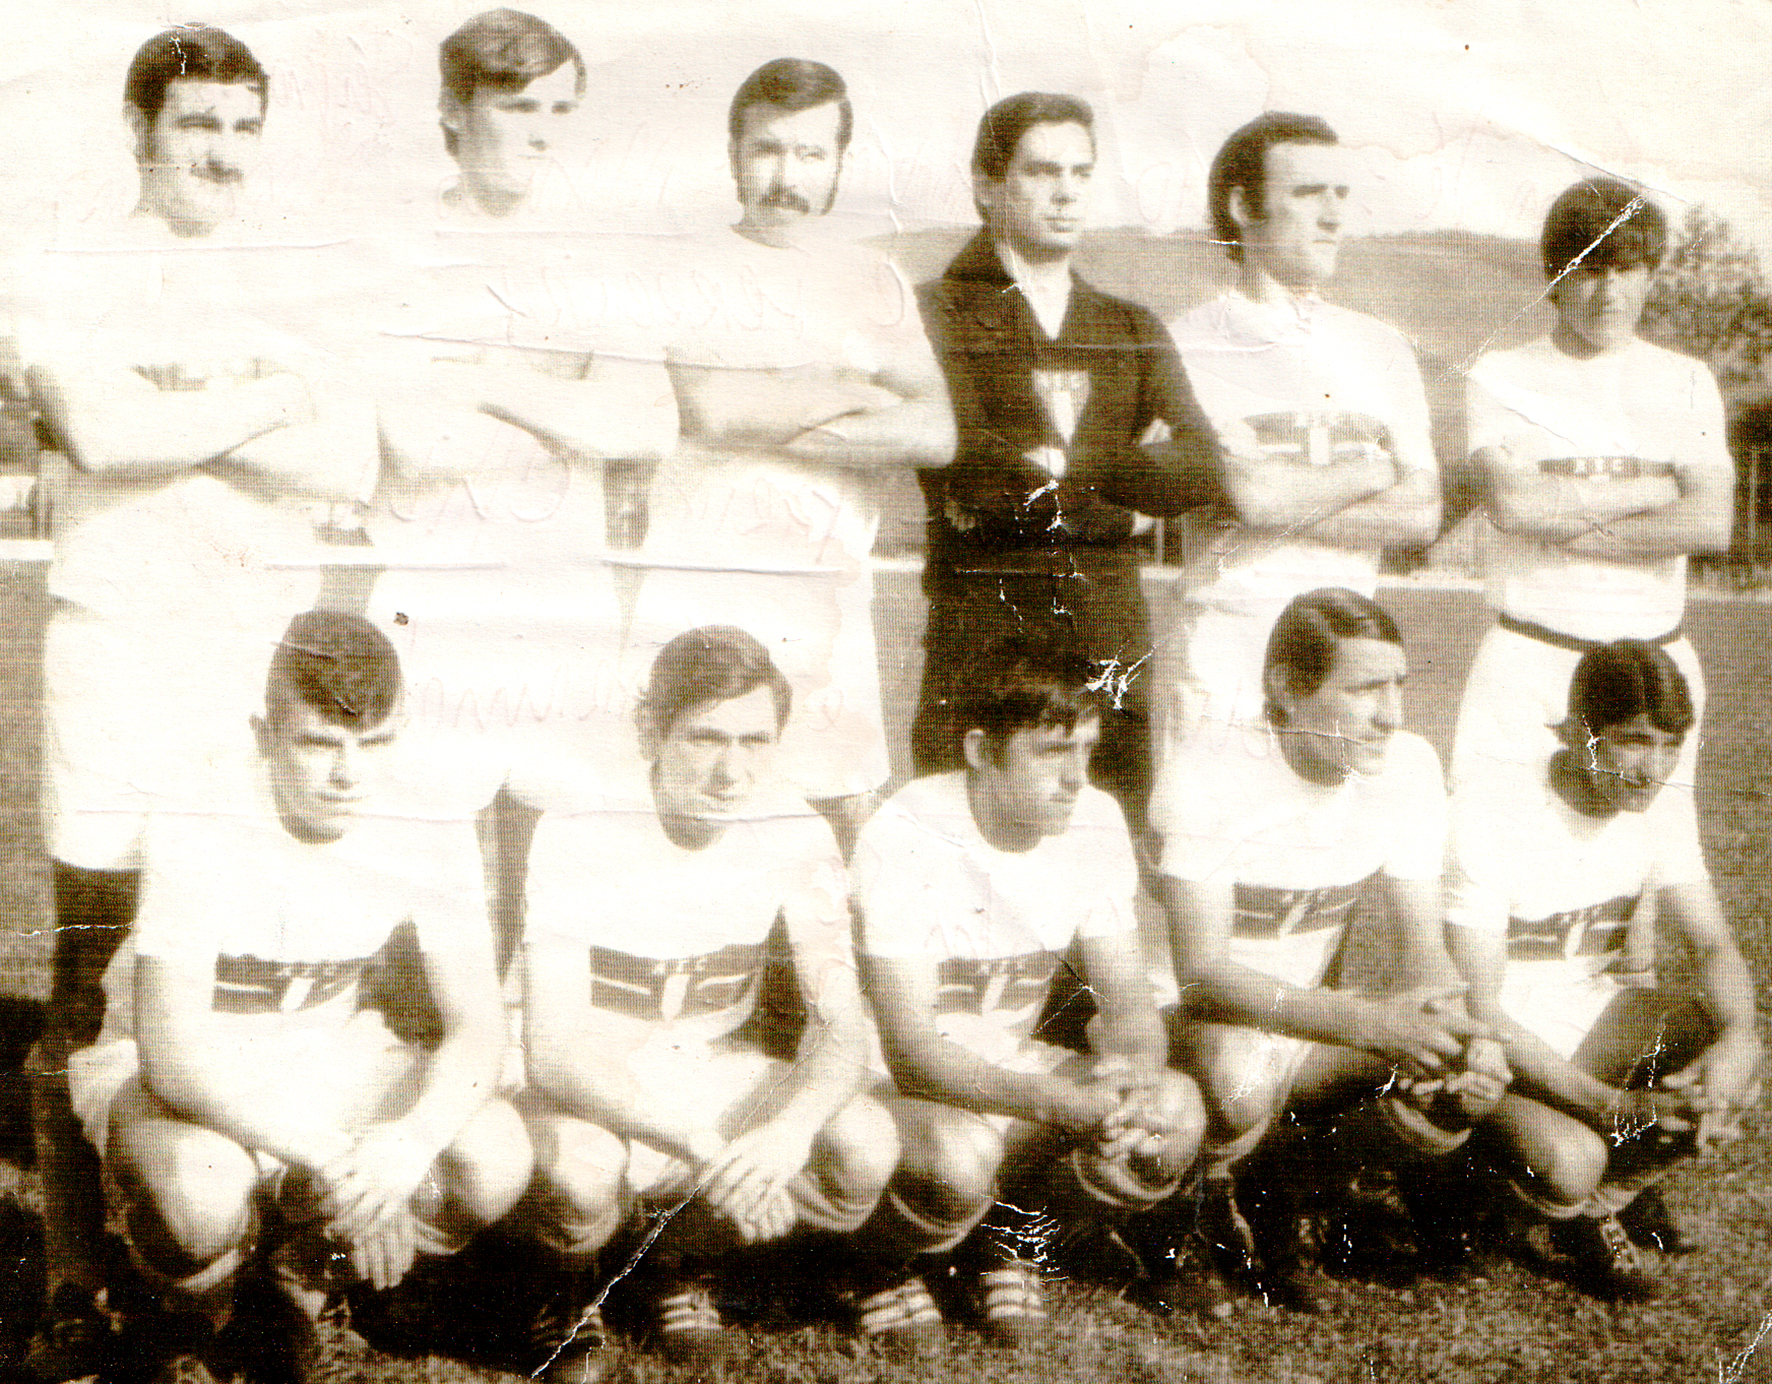 Imagem retratada grandes jogadores de futebol do vale do iguaçu nos anos 70